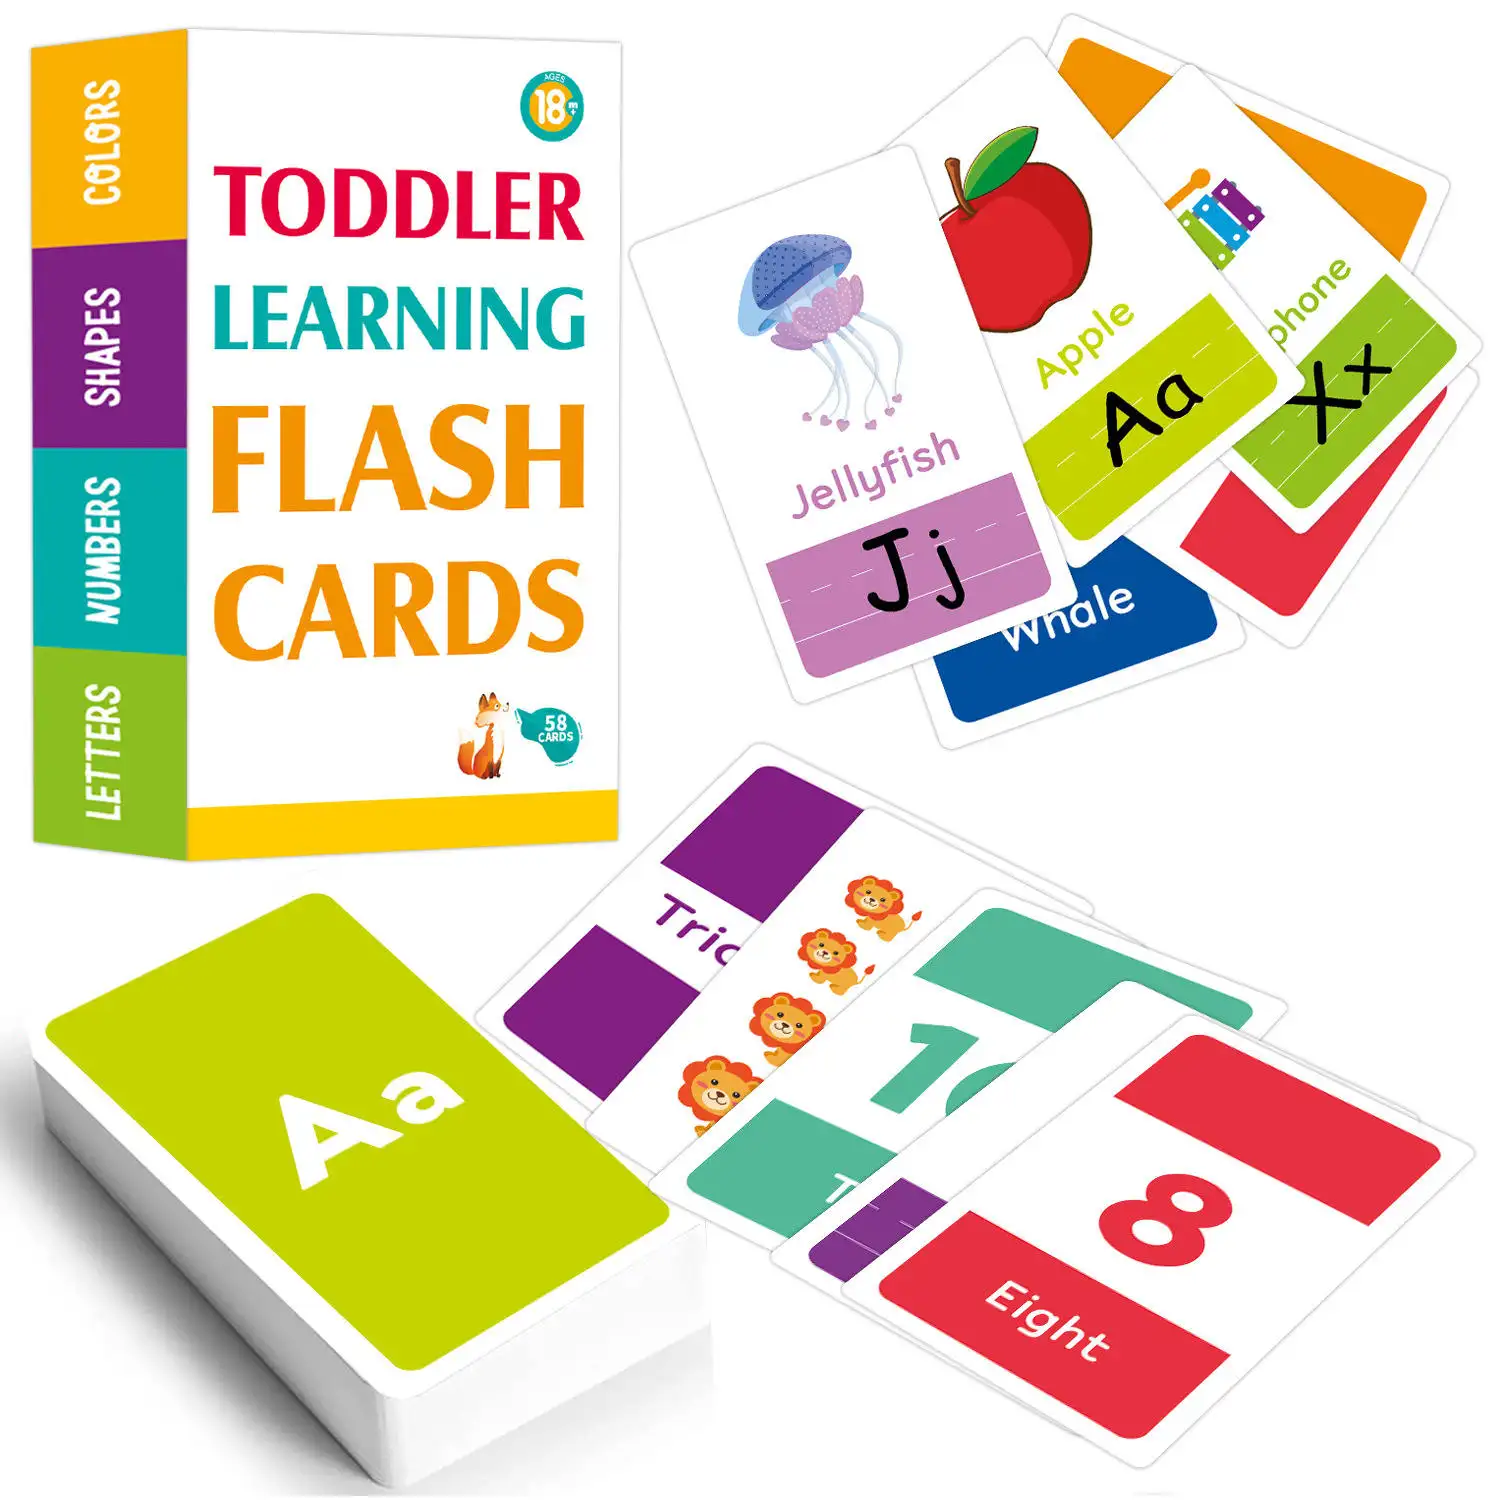 Bambini bambini bambini 2-6 anni imparano colori numero forme alfabeto animali educativi in età prescolare apprendimento schede flash